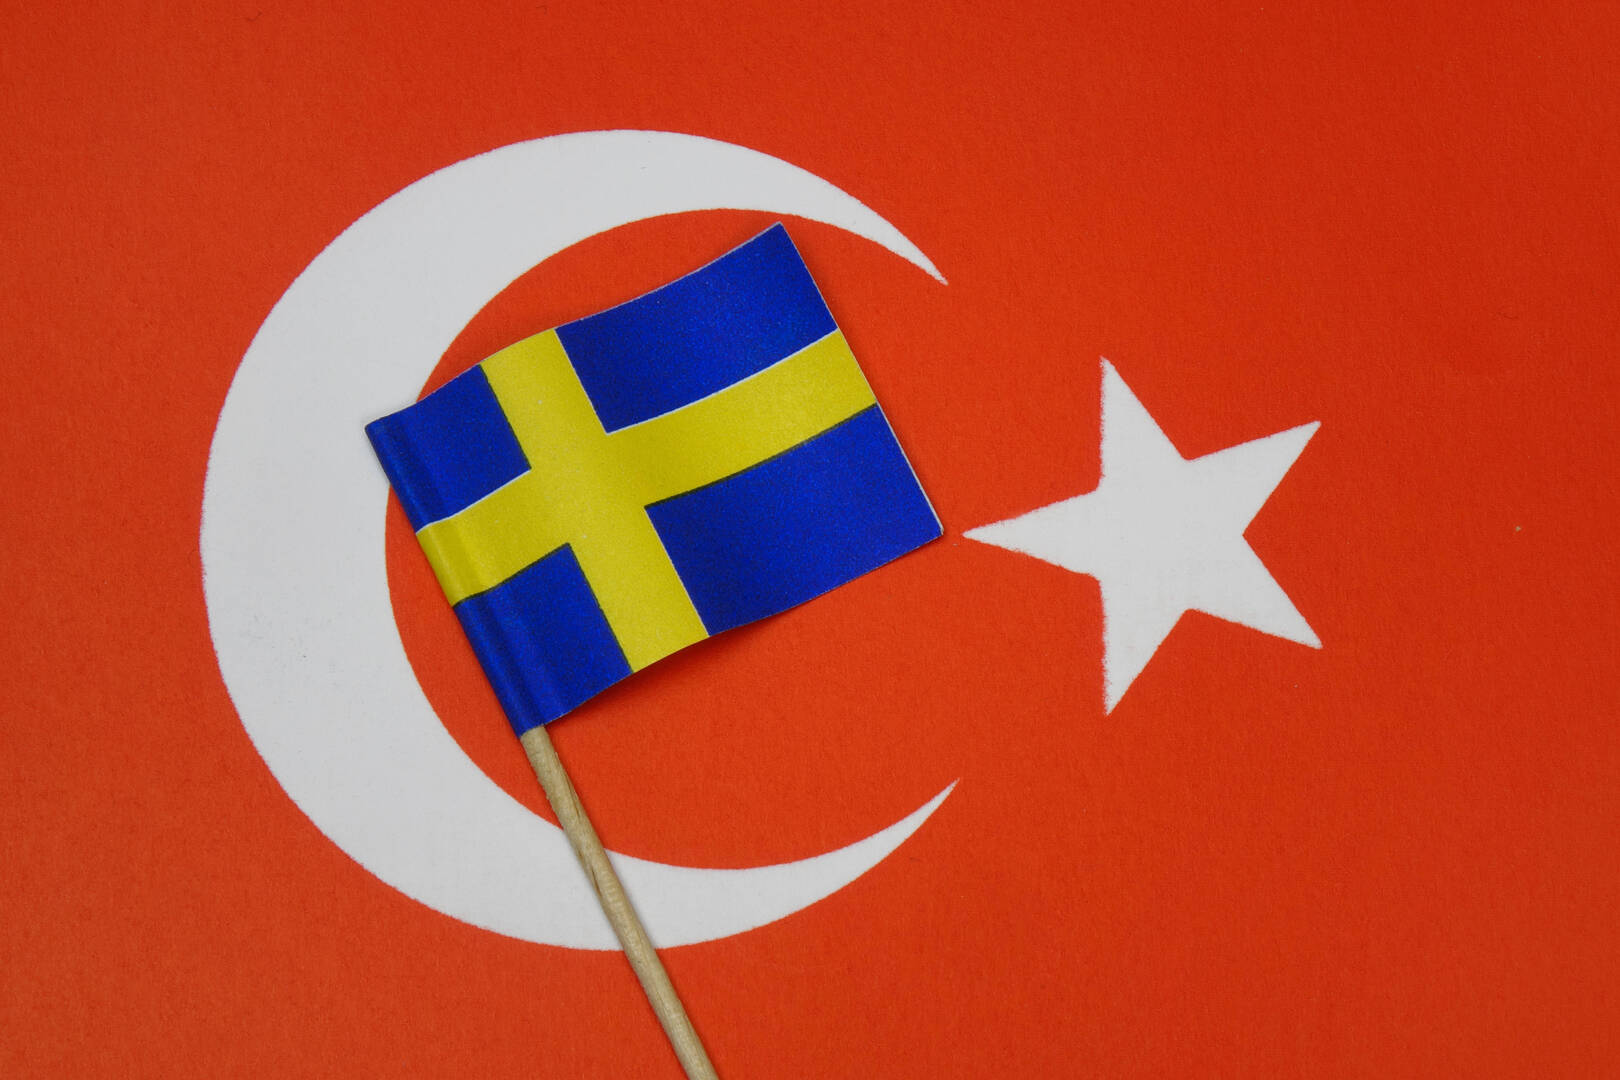 سياسيون أتراك ينتقدون موافقة أنقرة على انضمام السويد للناتو